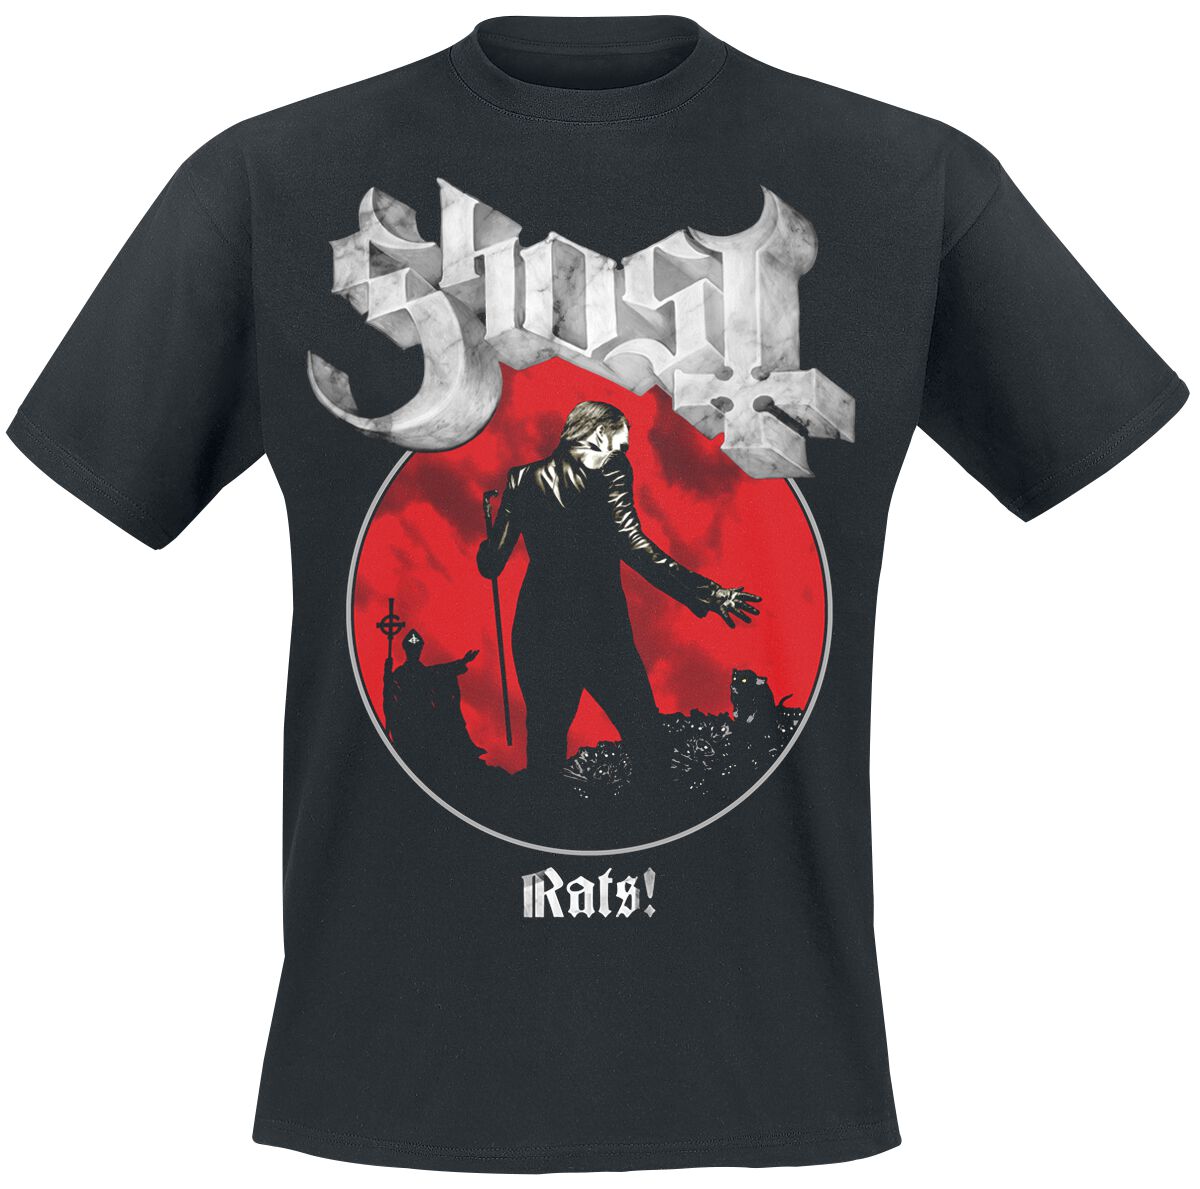 Ghost T-Shirt - Rats Admat - S bis XXL - für Männer - Größe XXL - schwarz  - Lizenziertes Merchandise!